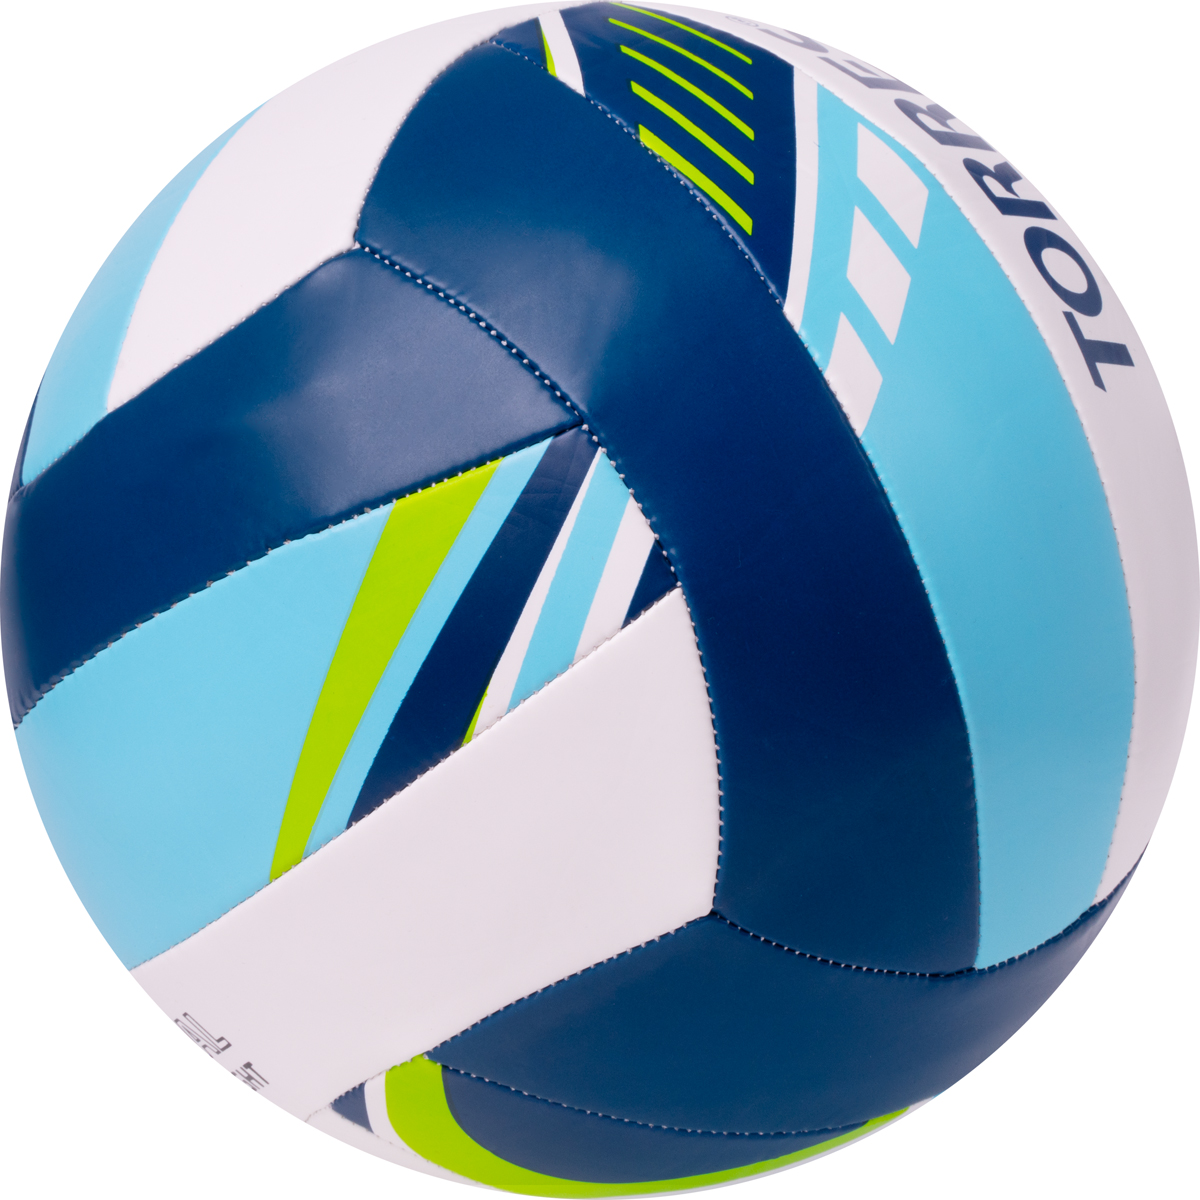 Мяч волейбольный Torres Simple Color V323115 р.5 1200_1200